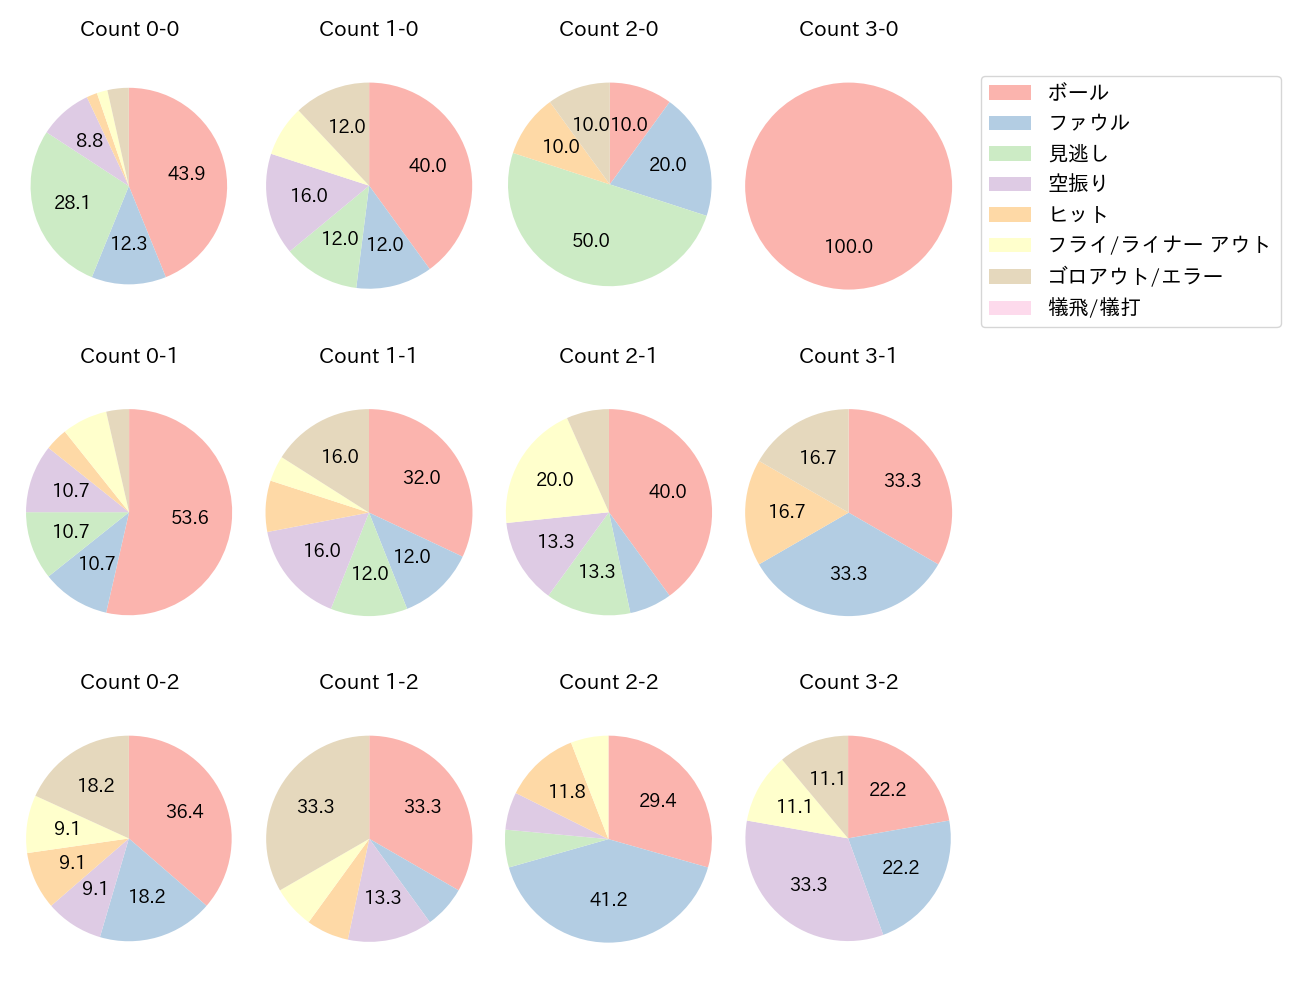 若林 晃弘の球数分布(2021年5月)